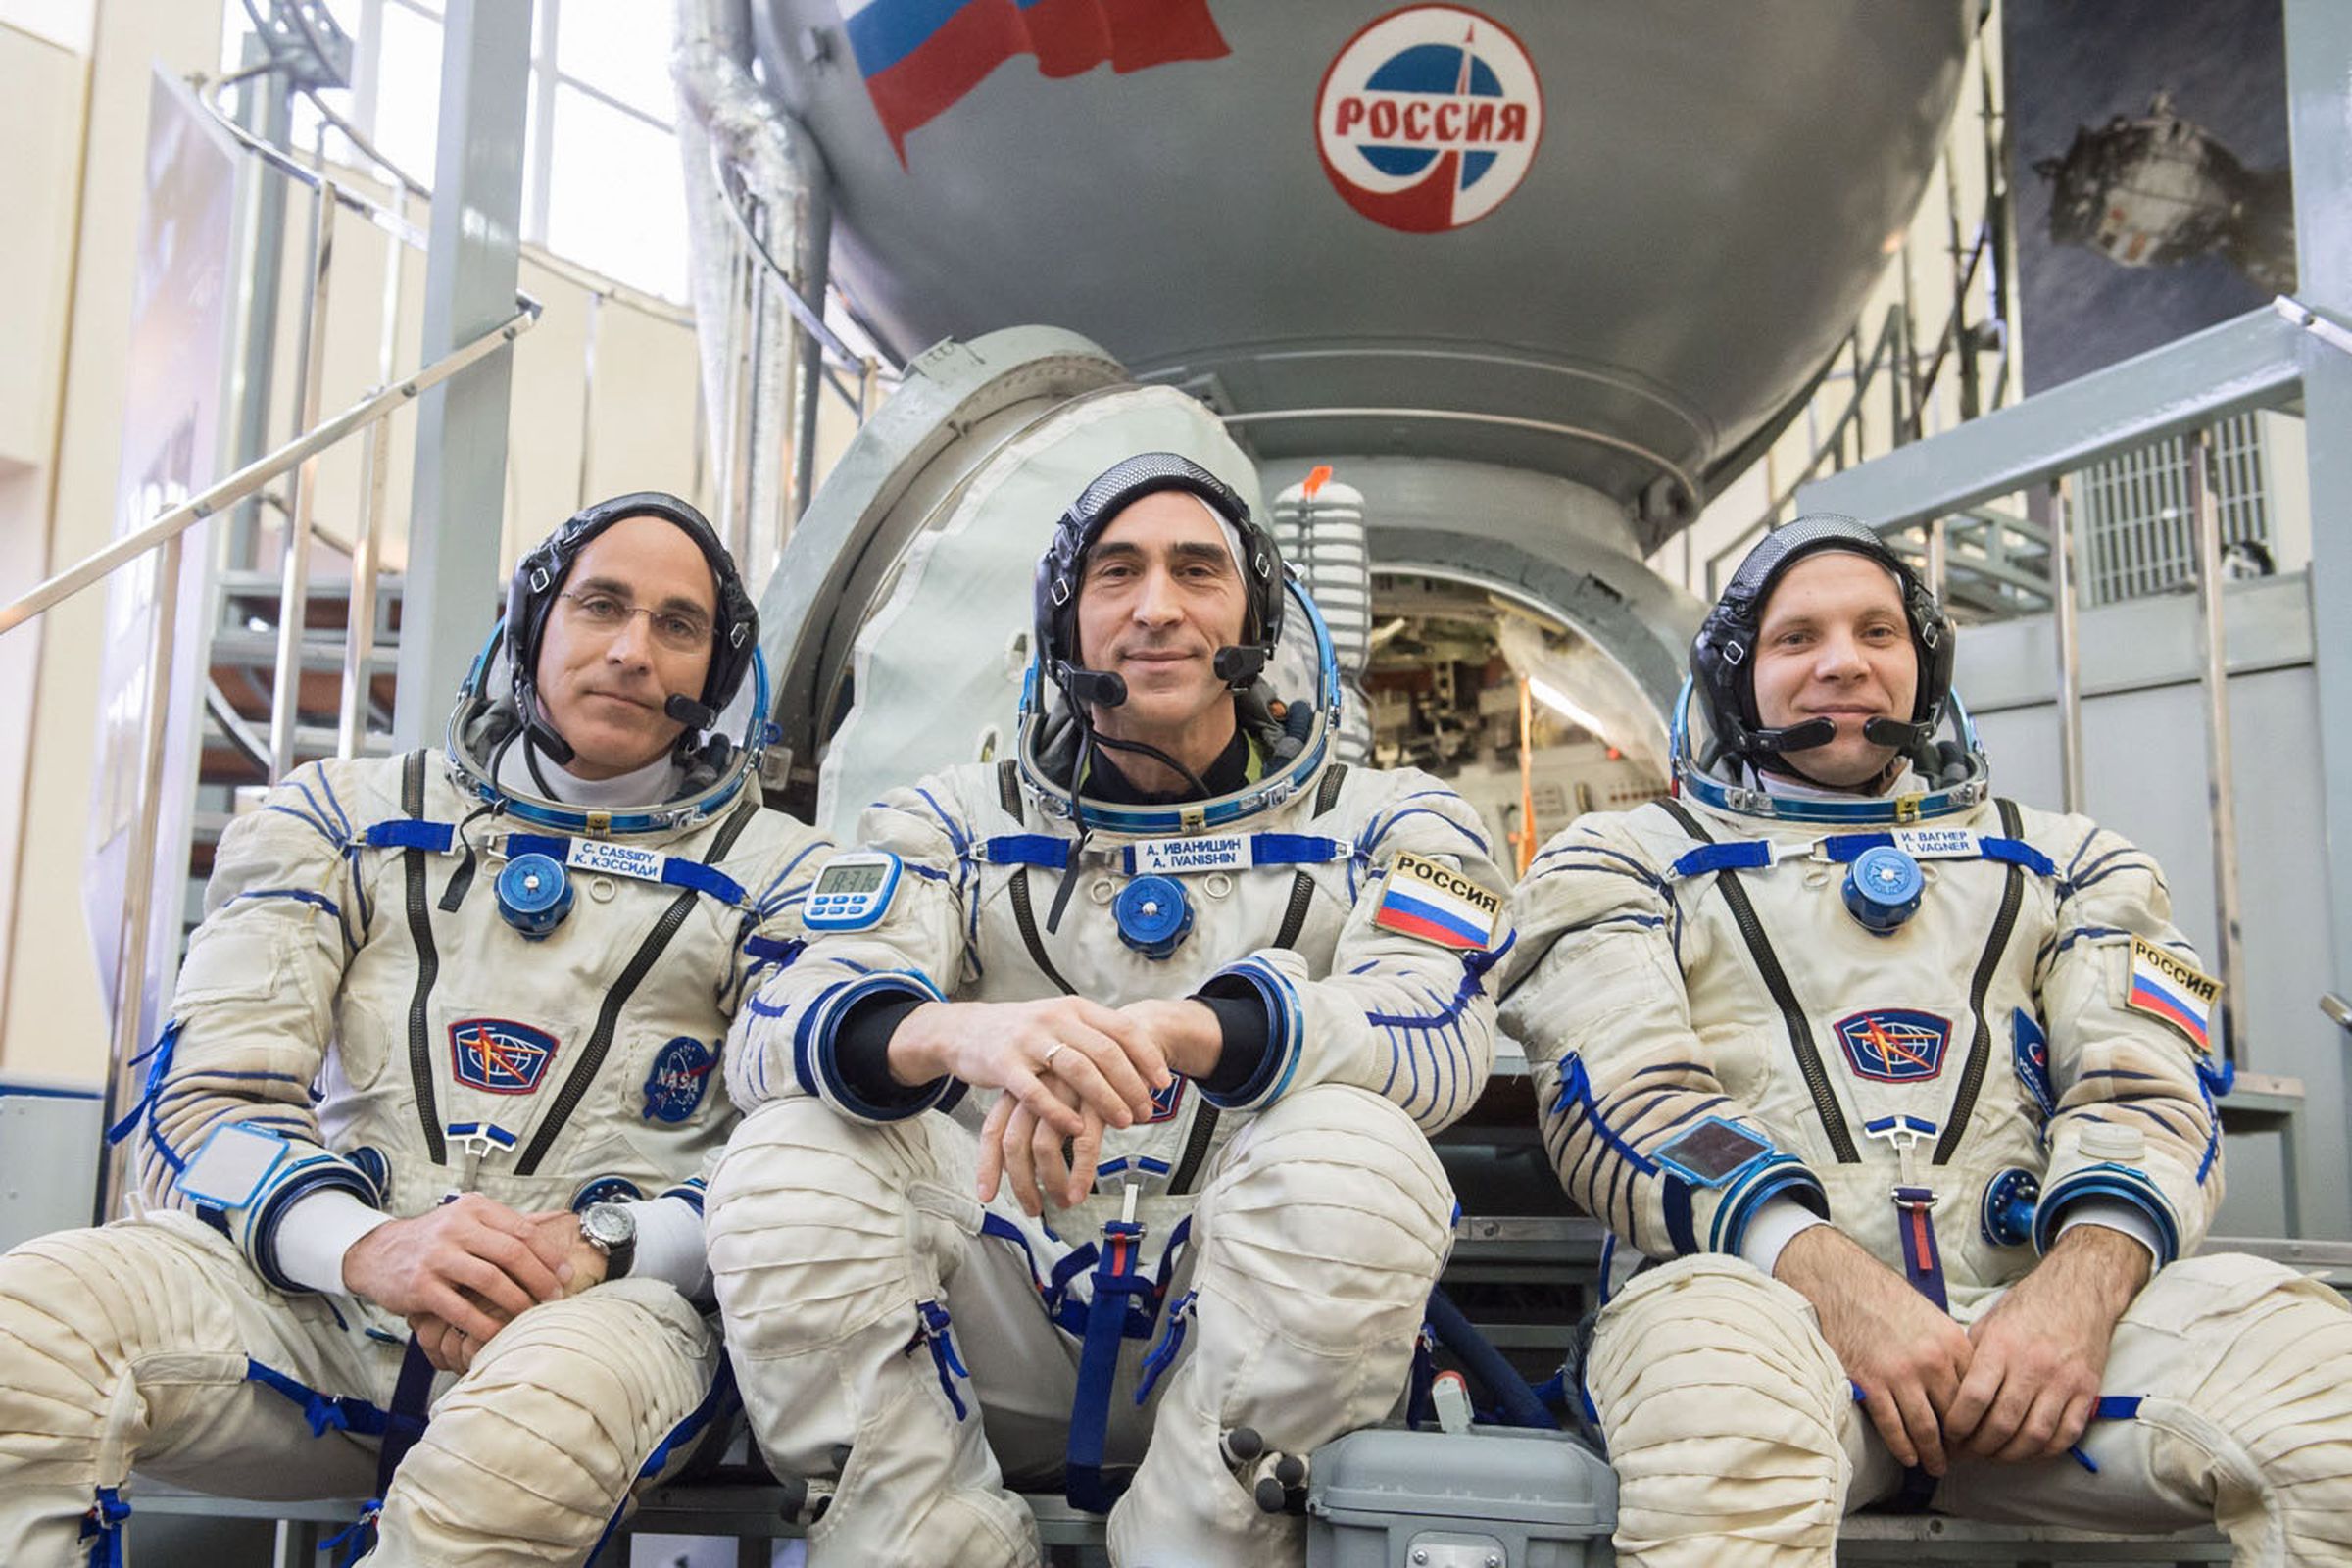 Сколько космонавтов полетело в космос. Экипаж МКС Вагнер Иванишин Кэссиди. МКС 63 Вагнер Иванишин.